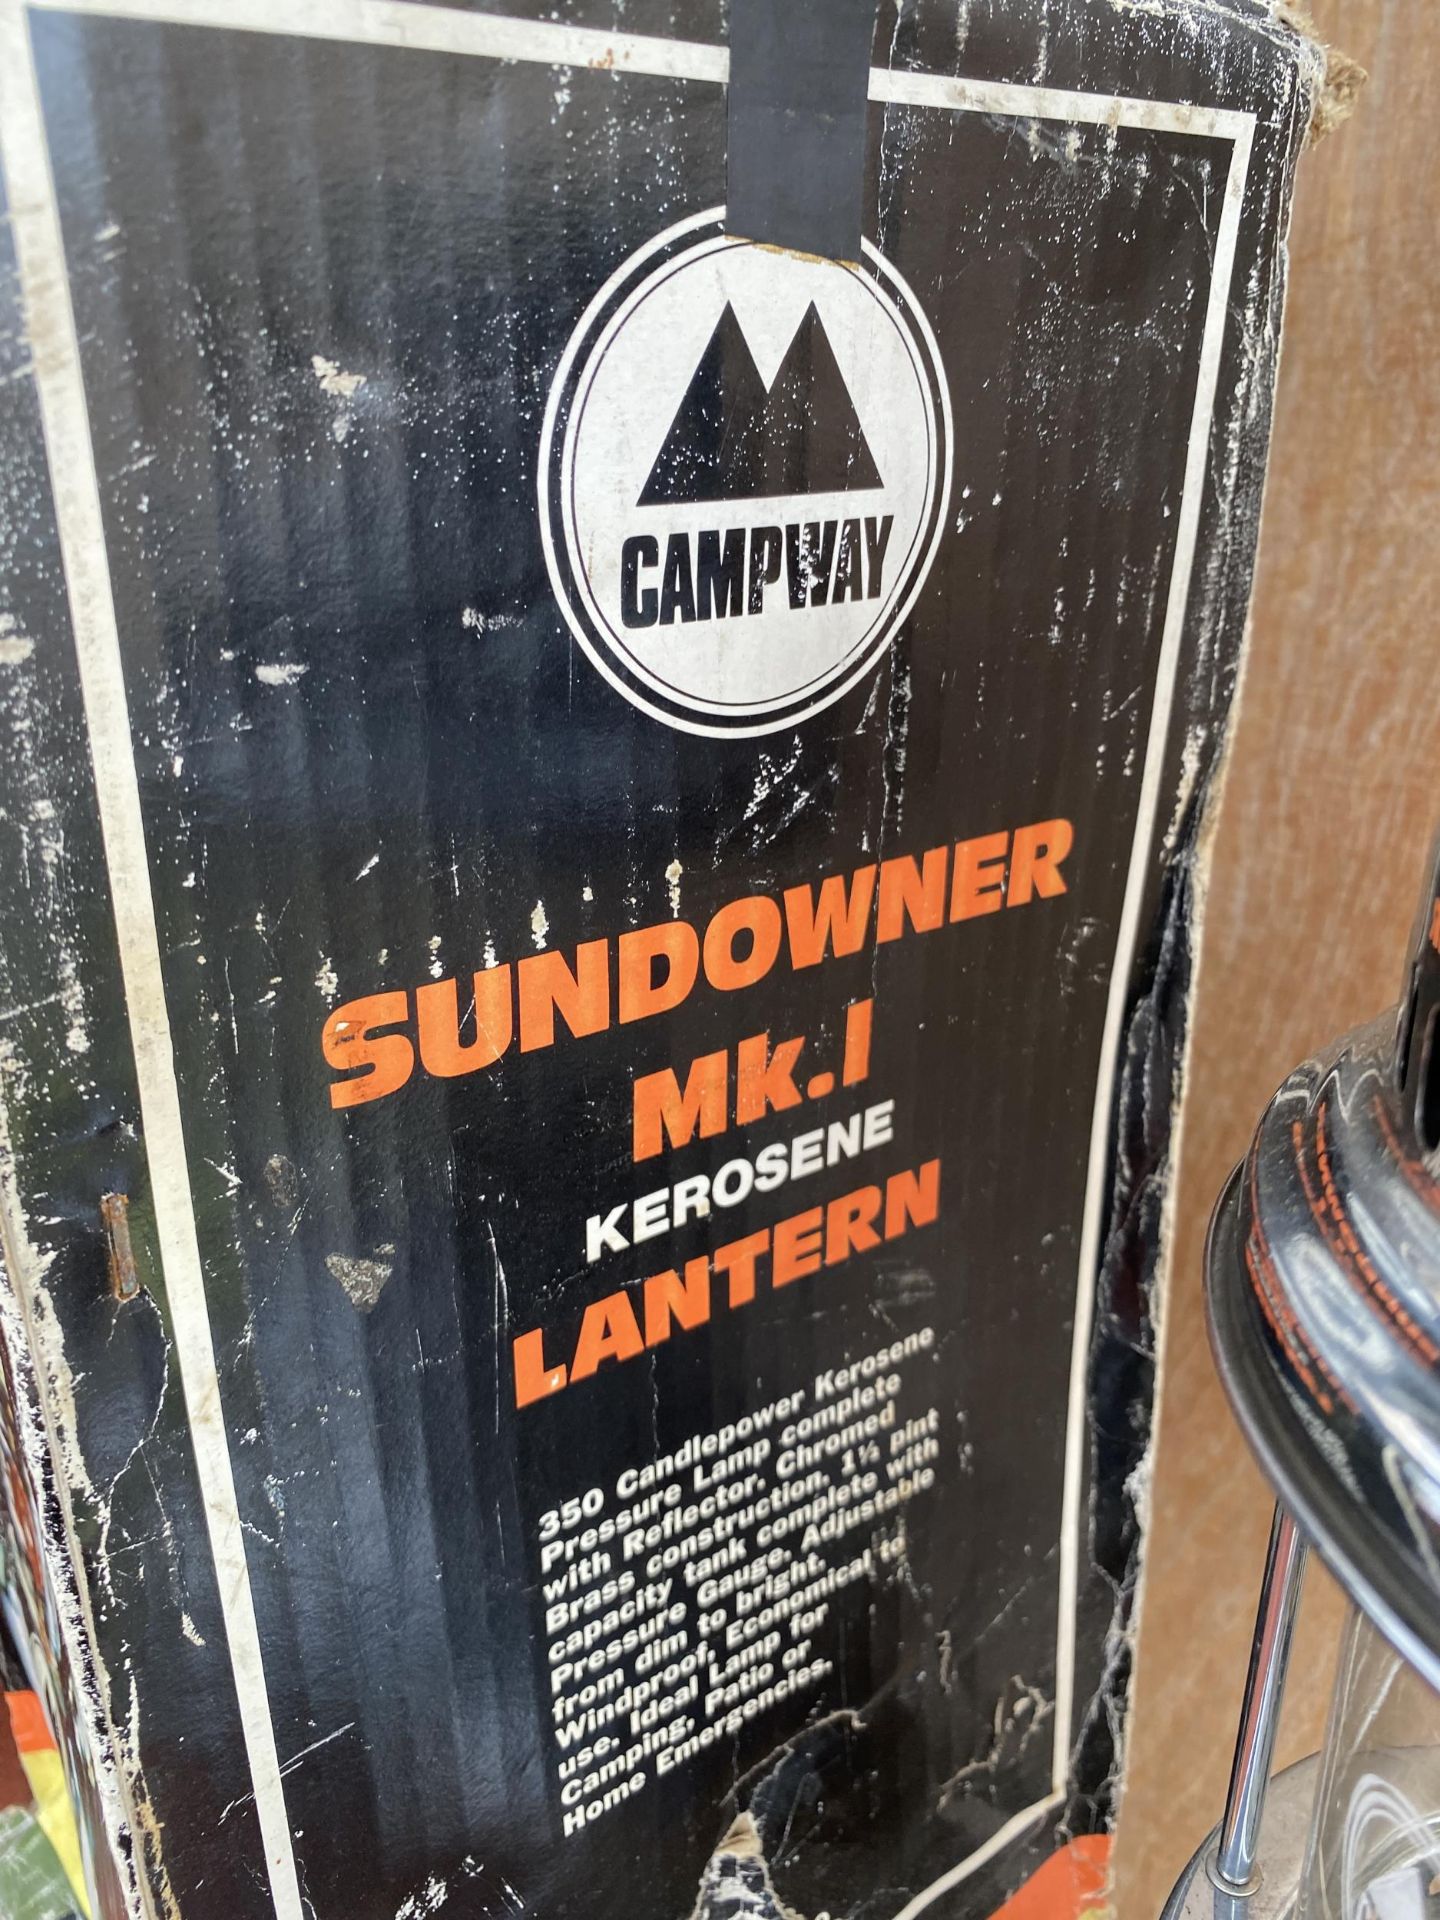 A VINTAGE CAMPWAY SUNDOWNER MK.1 KEROSENE LANTERN WITH ORIGINAL BOX - Image 3 of 3